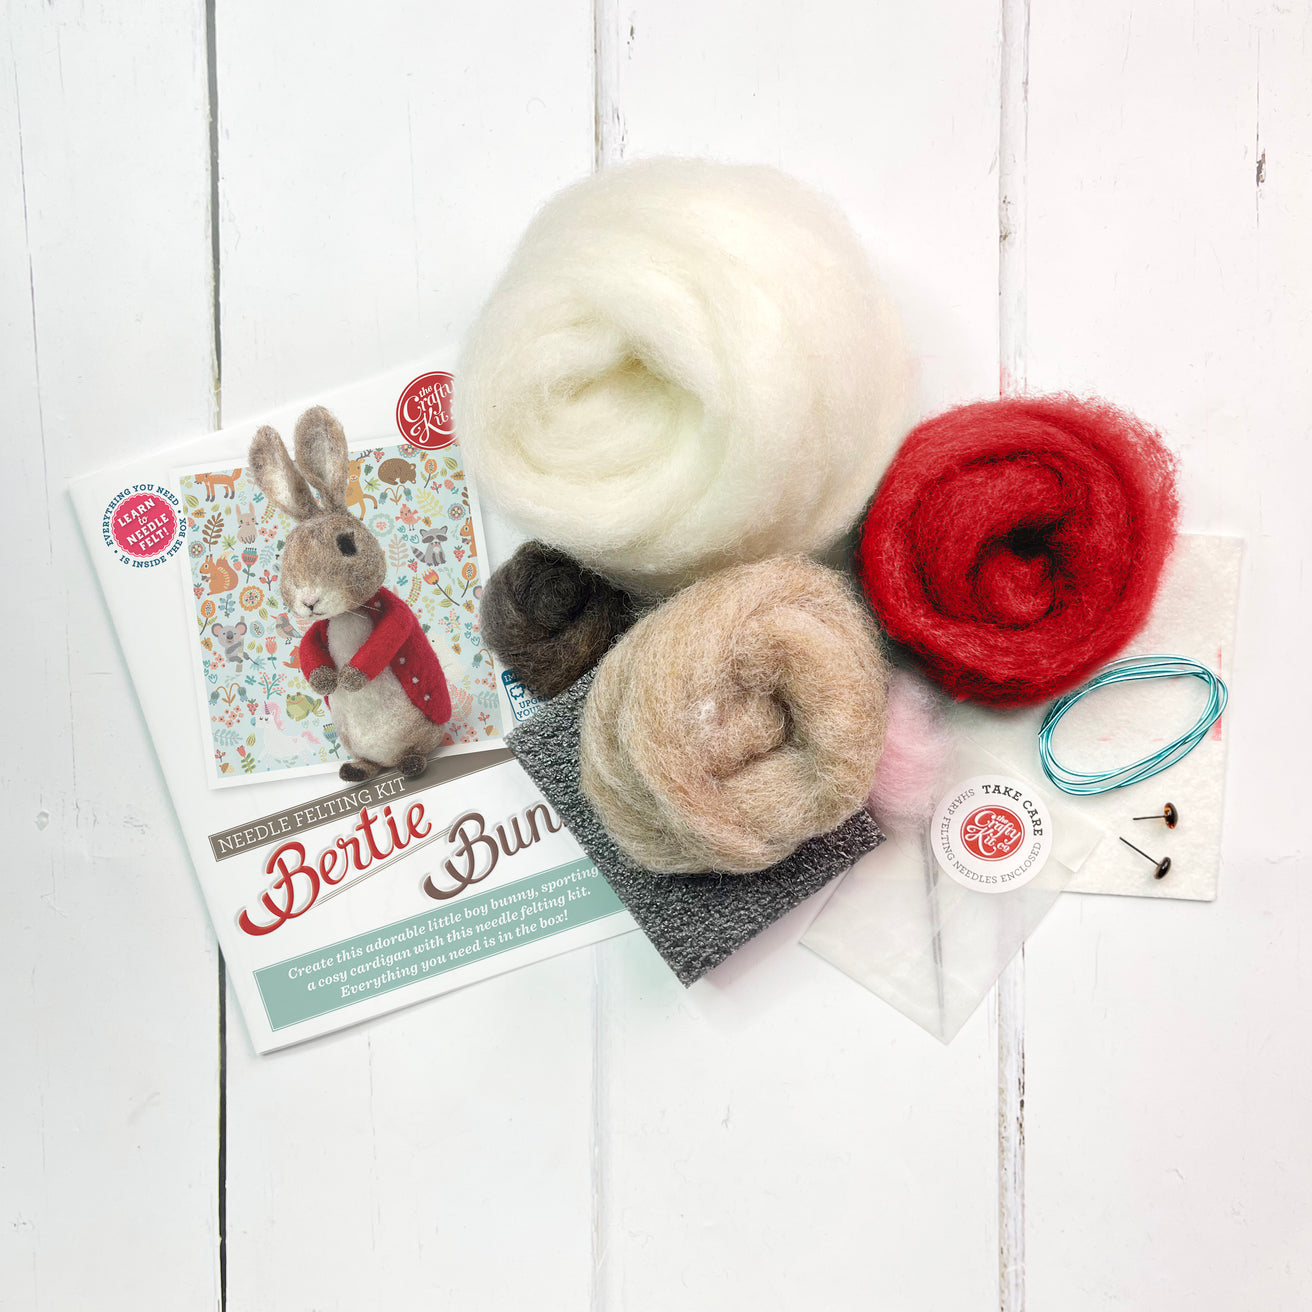 The Crafty Kit Company - Bertie Bunny Needle Felting Craft Kit